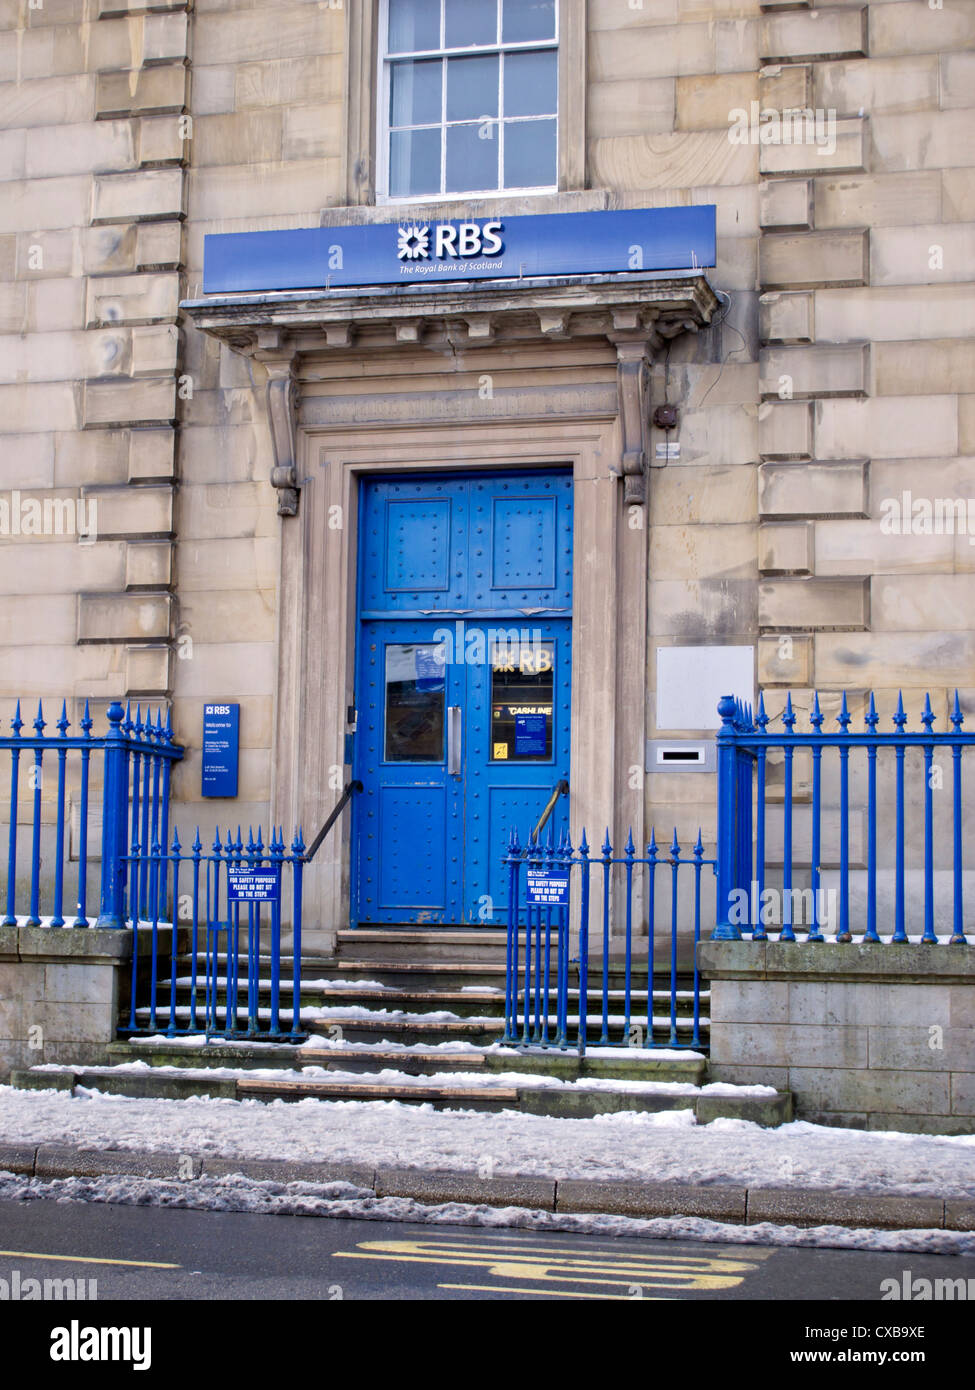 Couleur bleu porte à banque RBS de Bakewell Derbyshire en Angleterre Banque D'Images